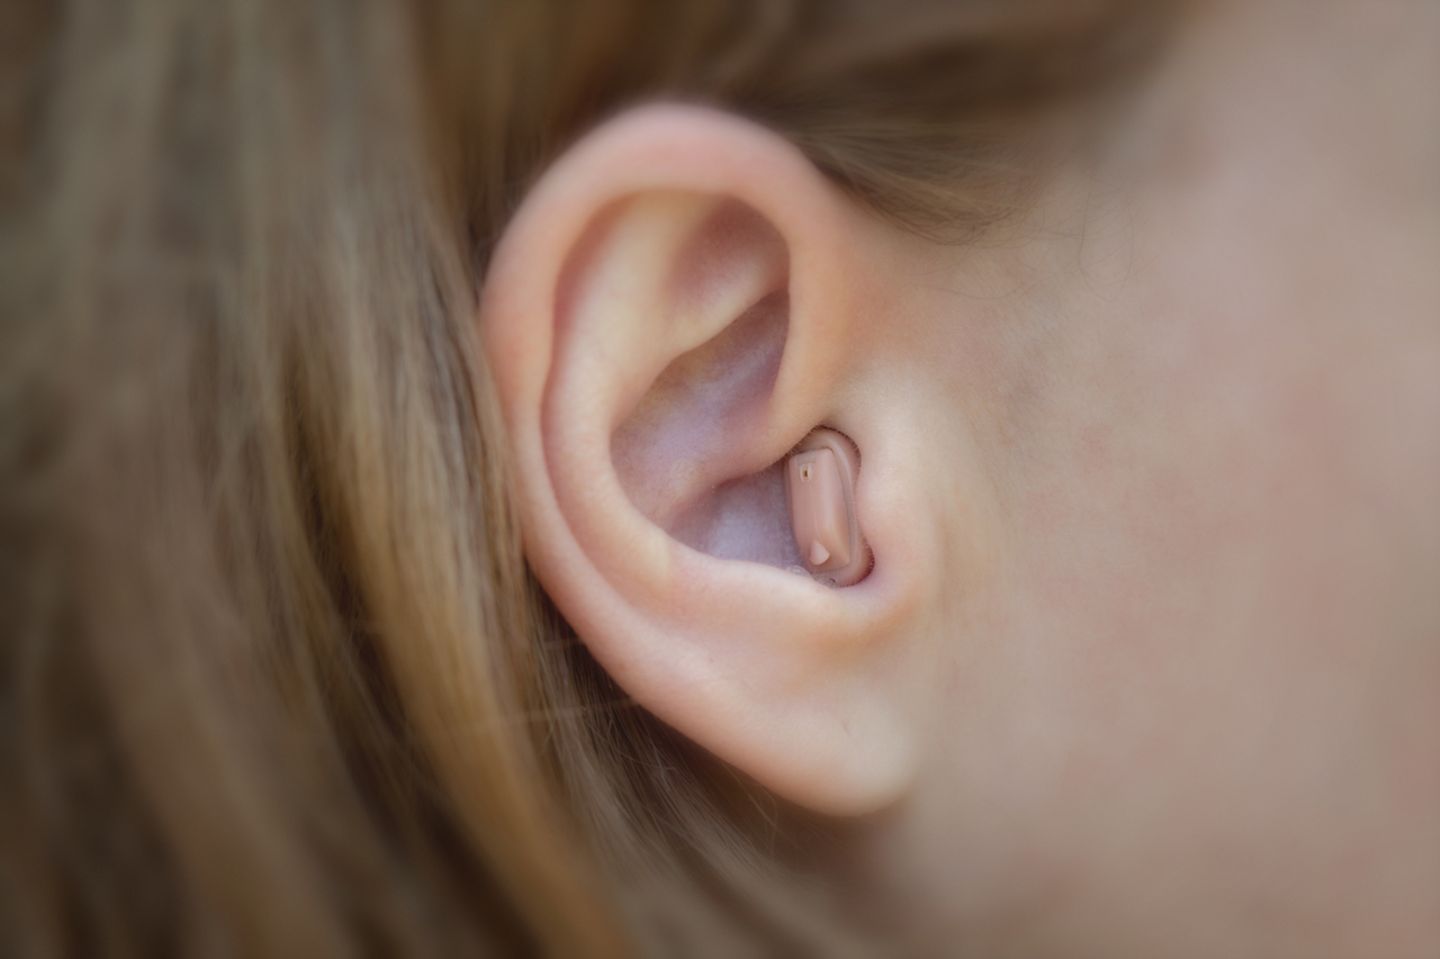 Hörprobleme: Wieso sind Hörgeräte ein Tabuthema?